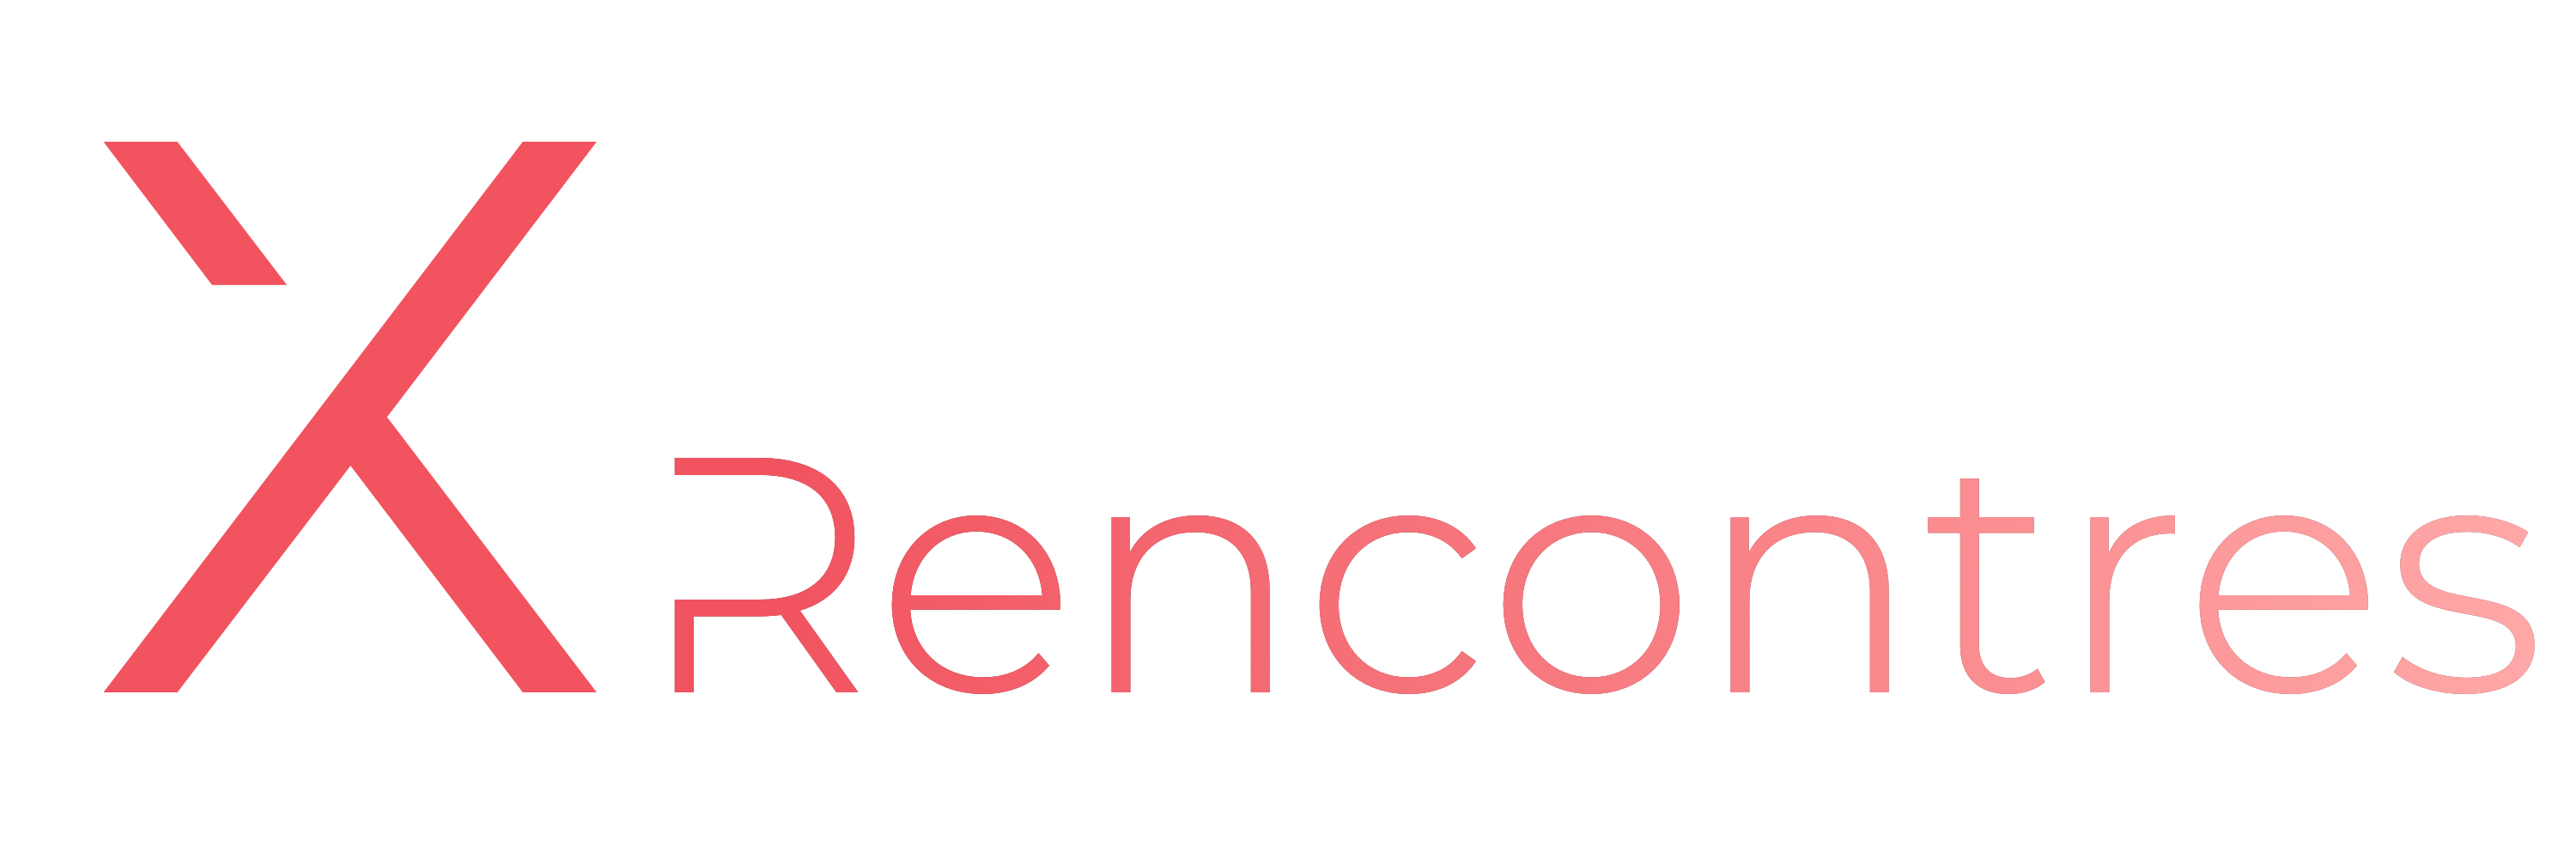 Logo XRencontres - Le site de rencontres sexuelles